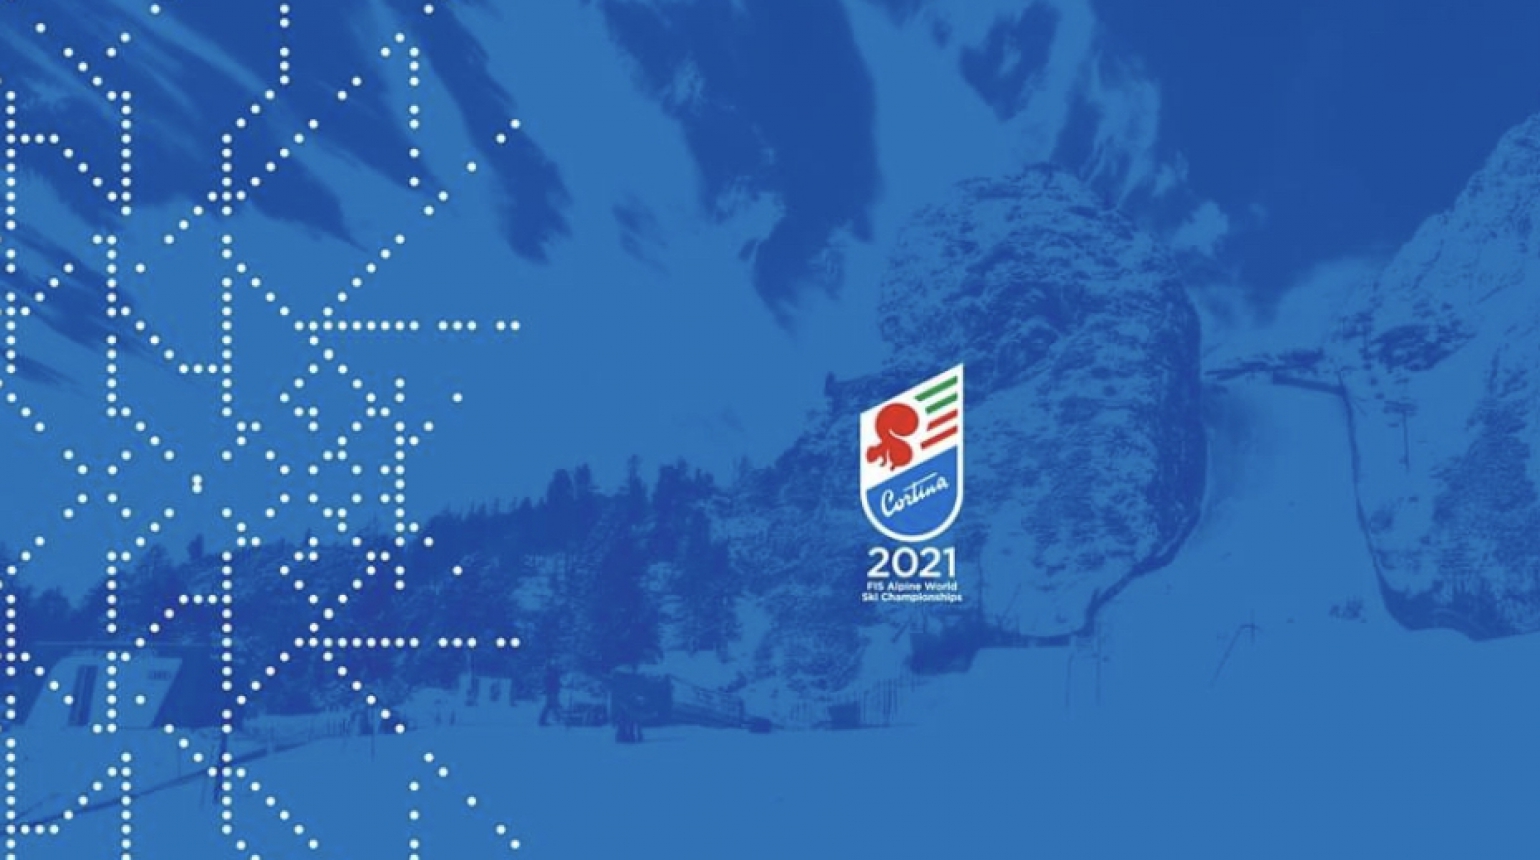 Představujeme konečný tým alpských lyžařů pro MS 2021 Cortina d’Ampezzo